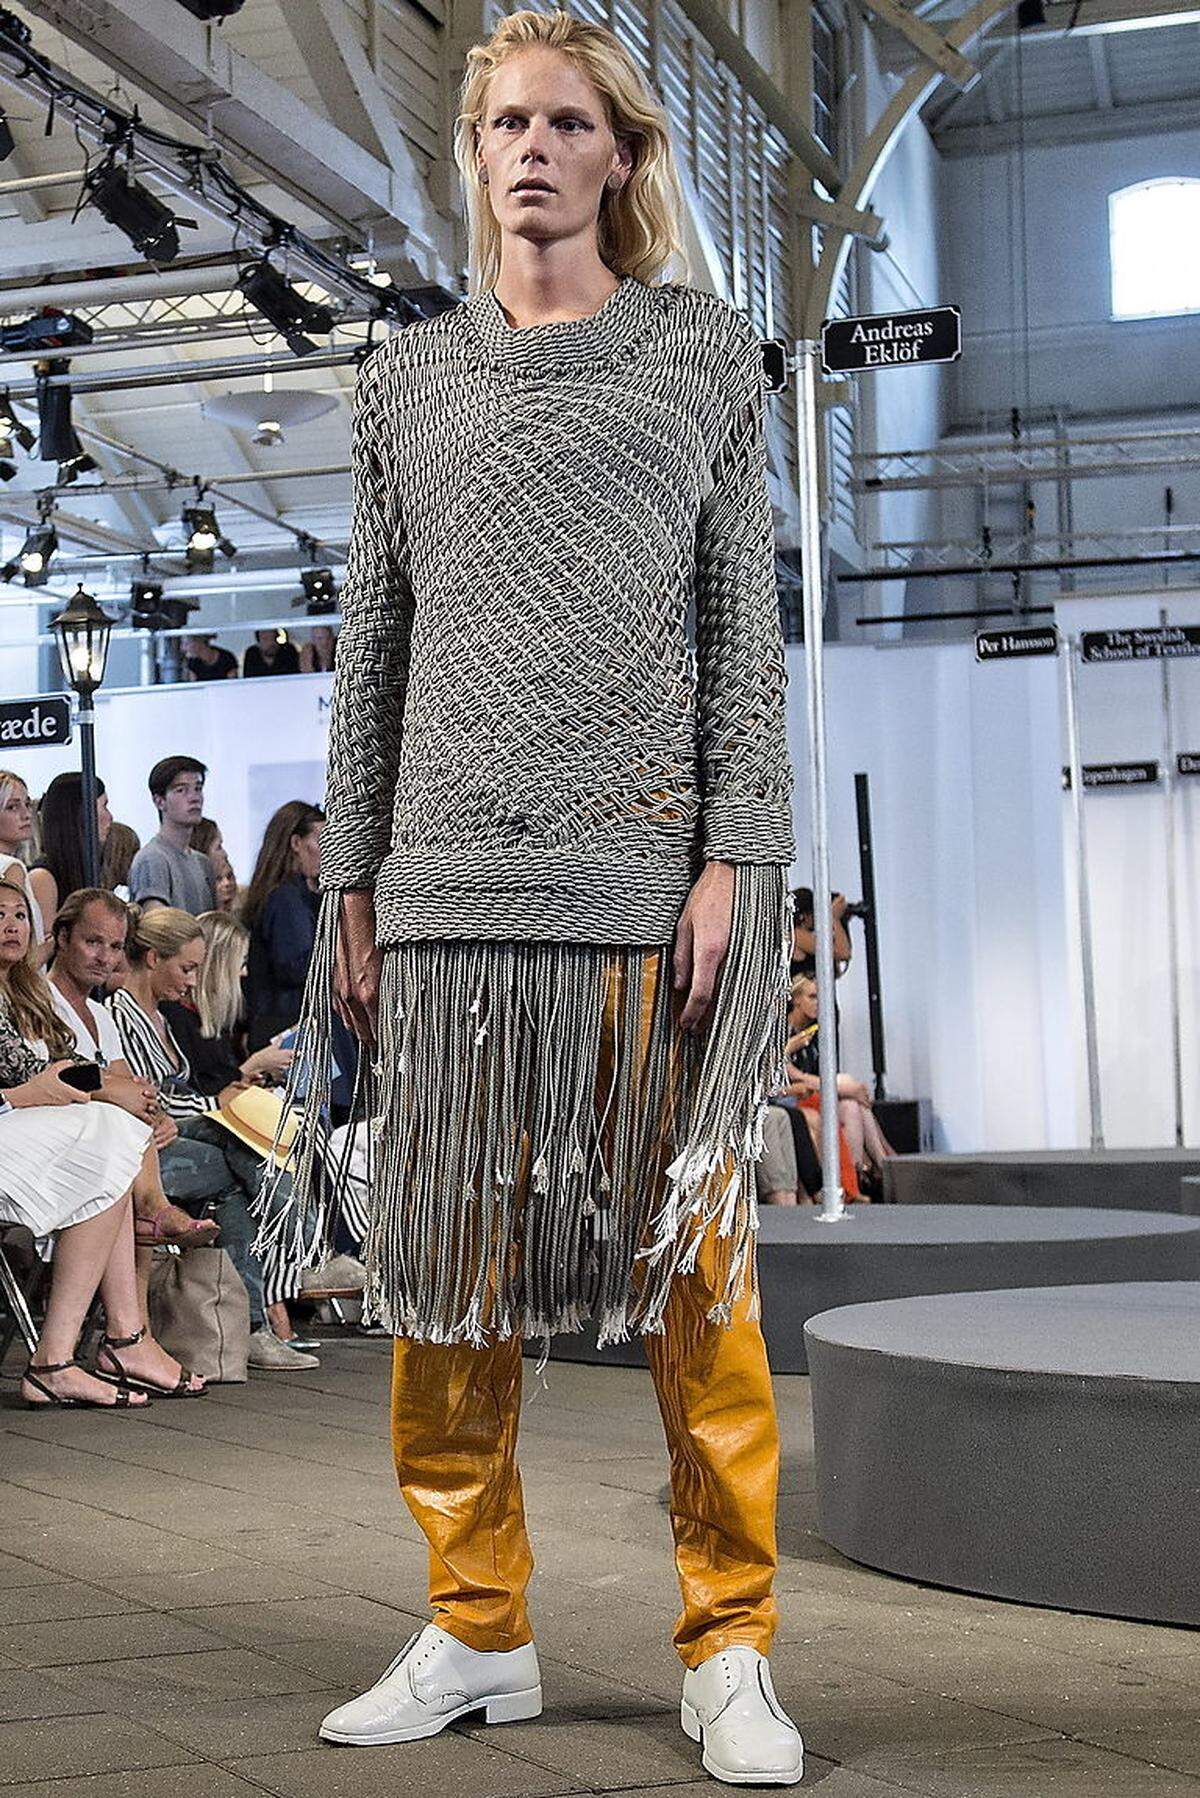 Designers' Nest ist bekannt für seine nordisch inspirierte Kleidung, wie dieser grob gewobene Pullover. Farbe und Material der Hose verleihen dem Outfit Frische.